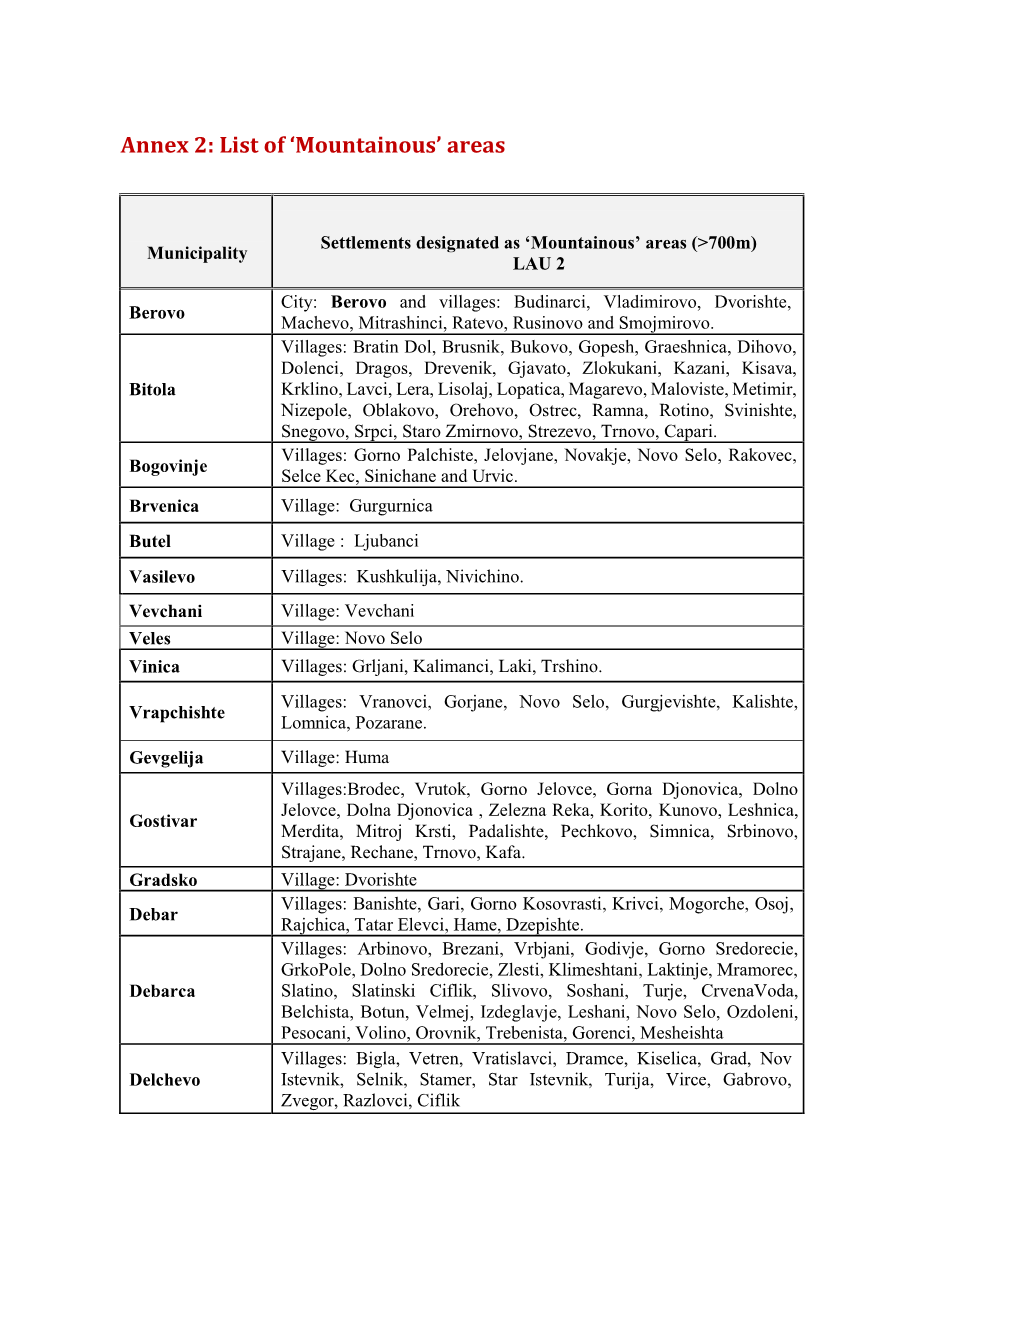 Annex 2: List of 'Mountainous' Areas